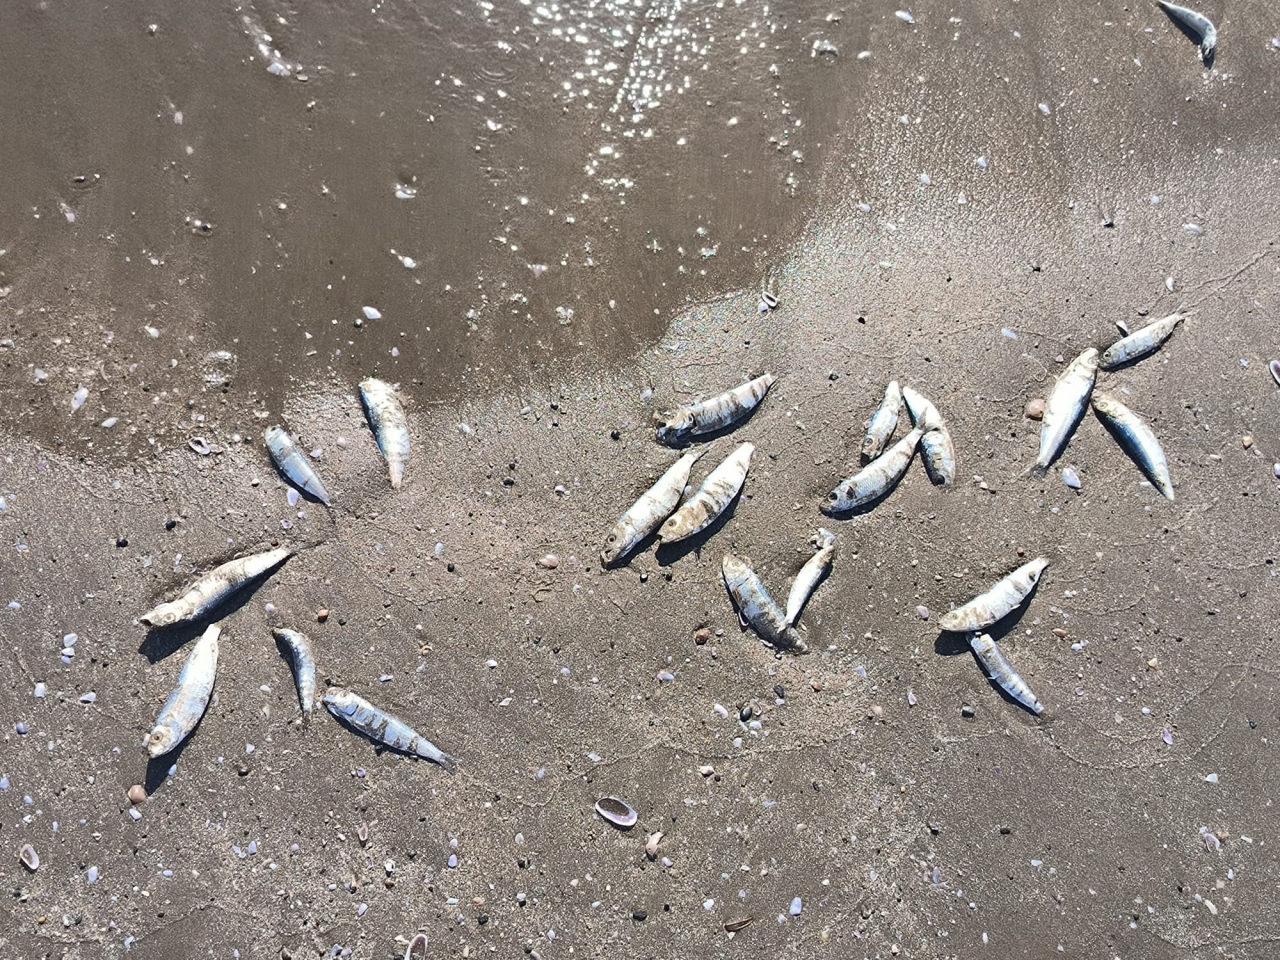 Hatay'da binlerce balık karaya vurdu: Bu sene ilk defa balık ölümü görüyorum